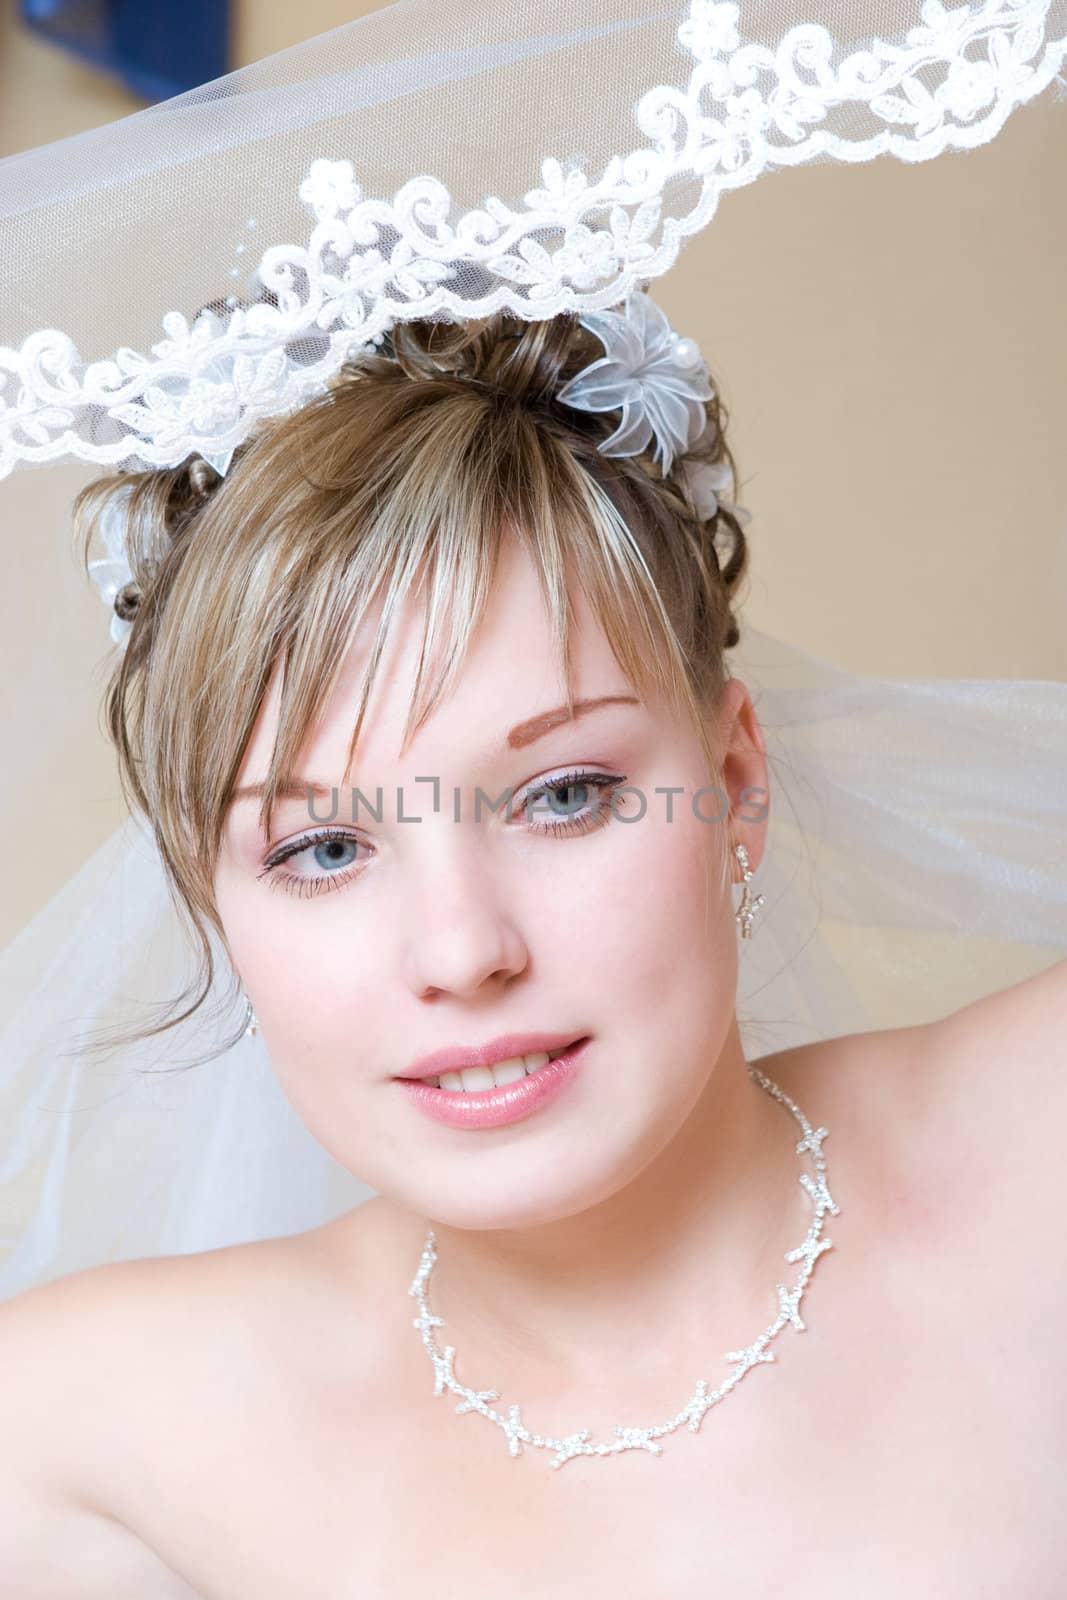 look of the bride by vsurkov